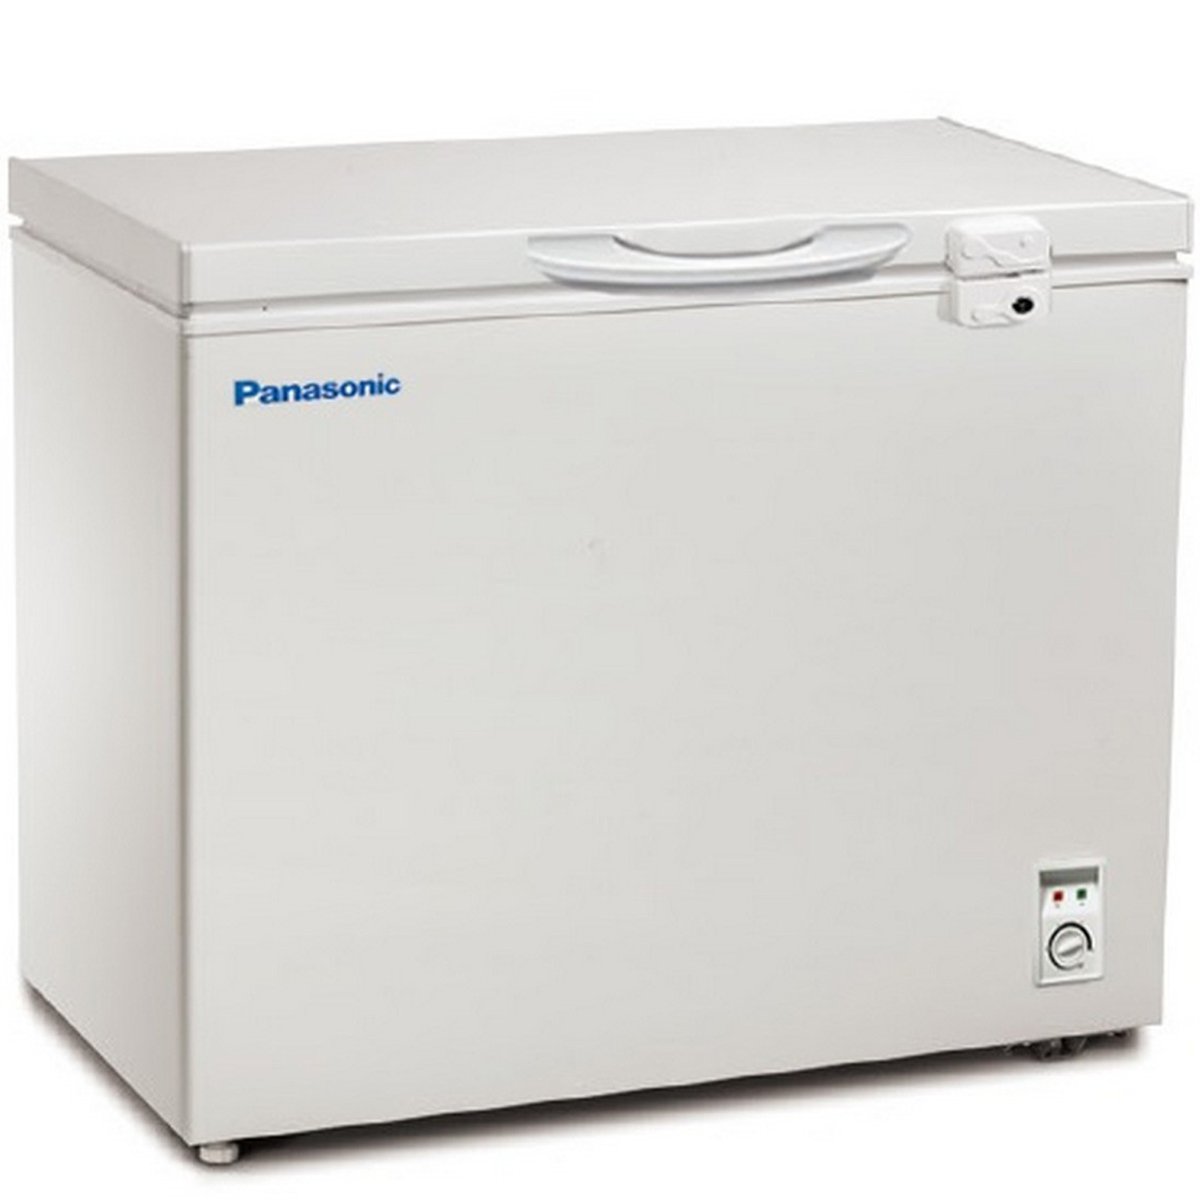 اشتري قم بشراء Panasonic Chest Freezer SCRCH200 200Ltr Online at Best Price من الموقع - من لولو هايبر ماركت Chest Freezers في الكويت